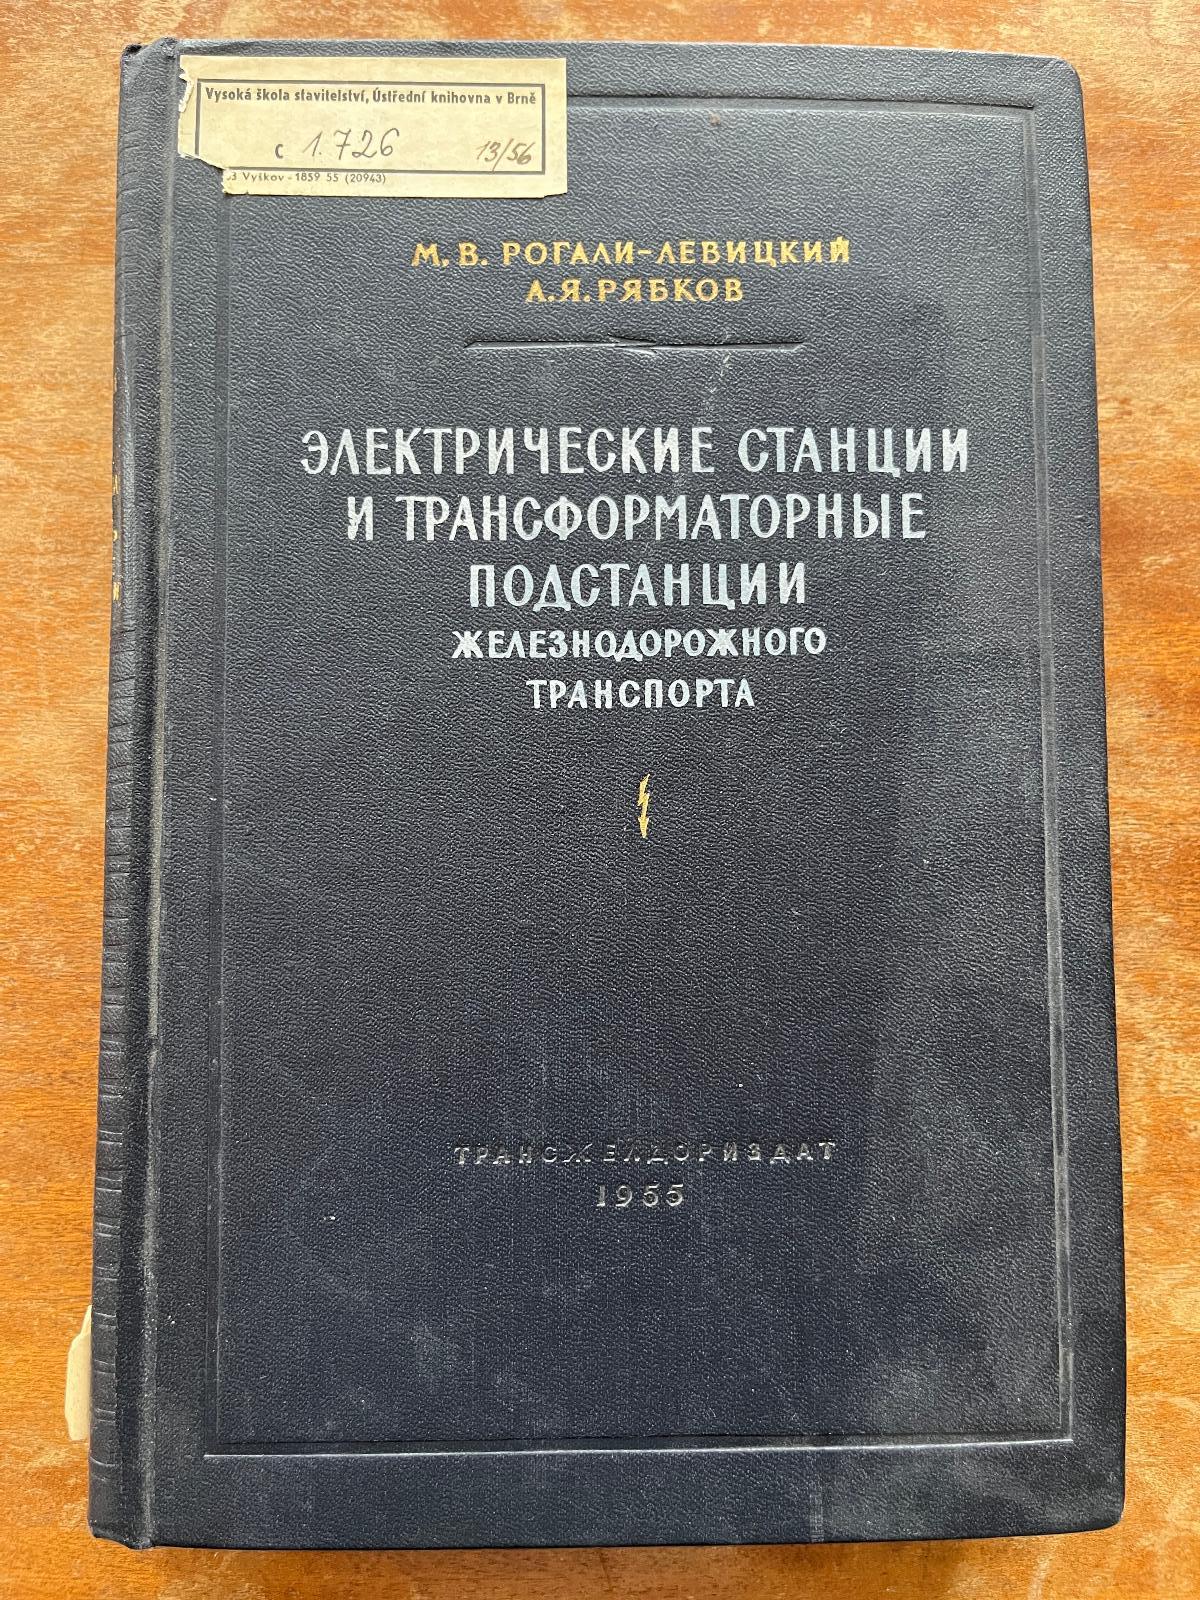 Cudzojazyčná železničná literatúra (1955) (o) - Knihy